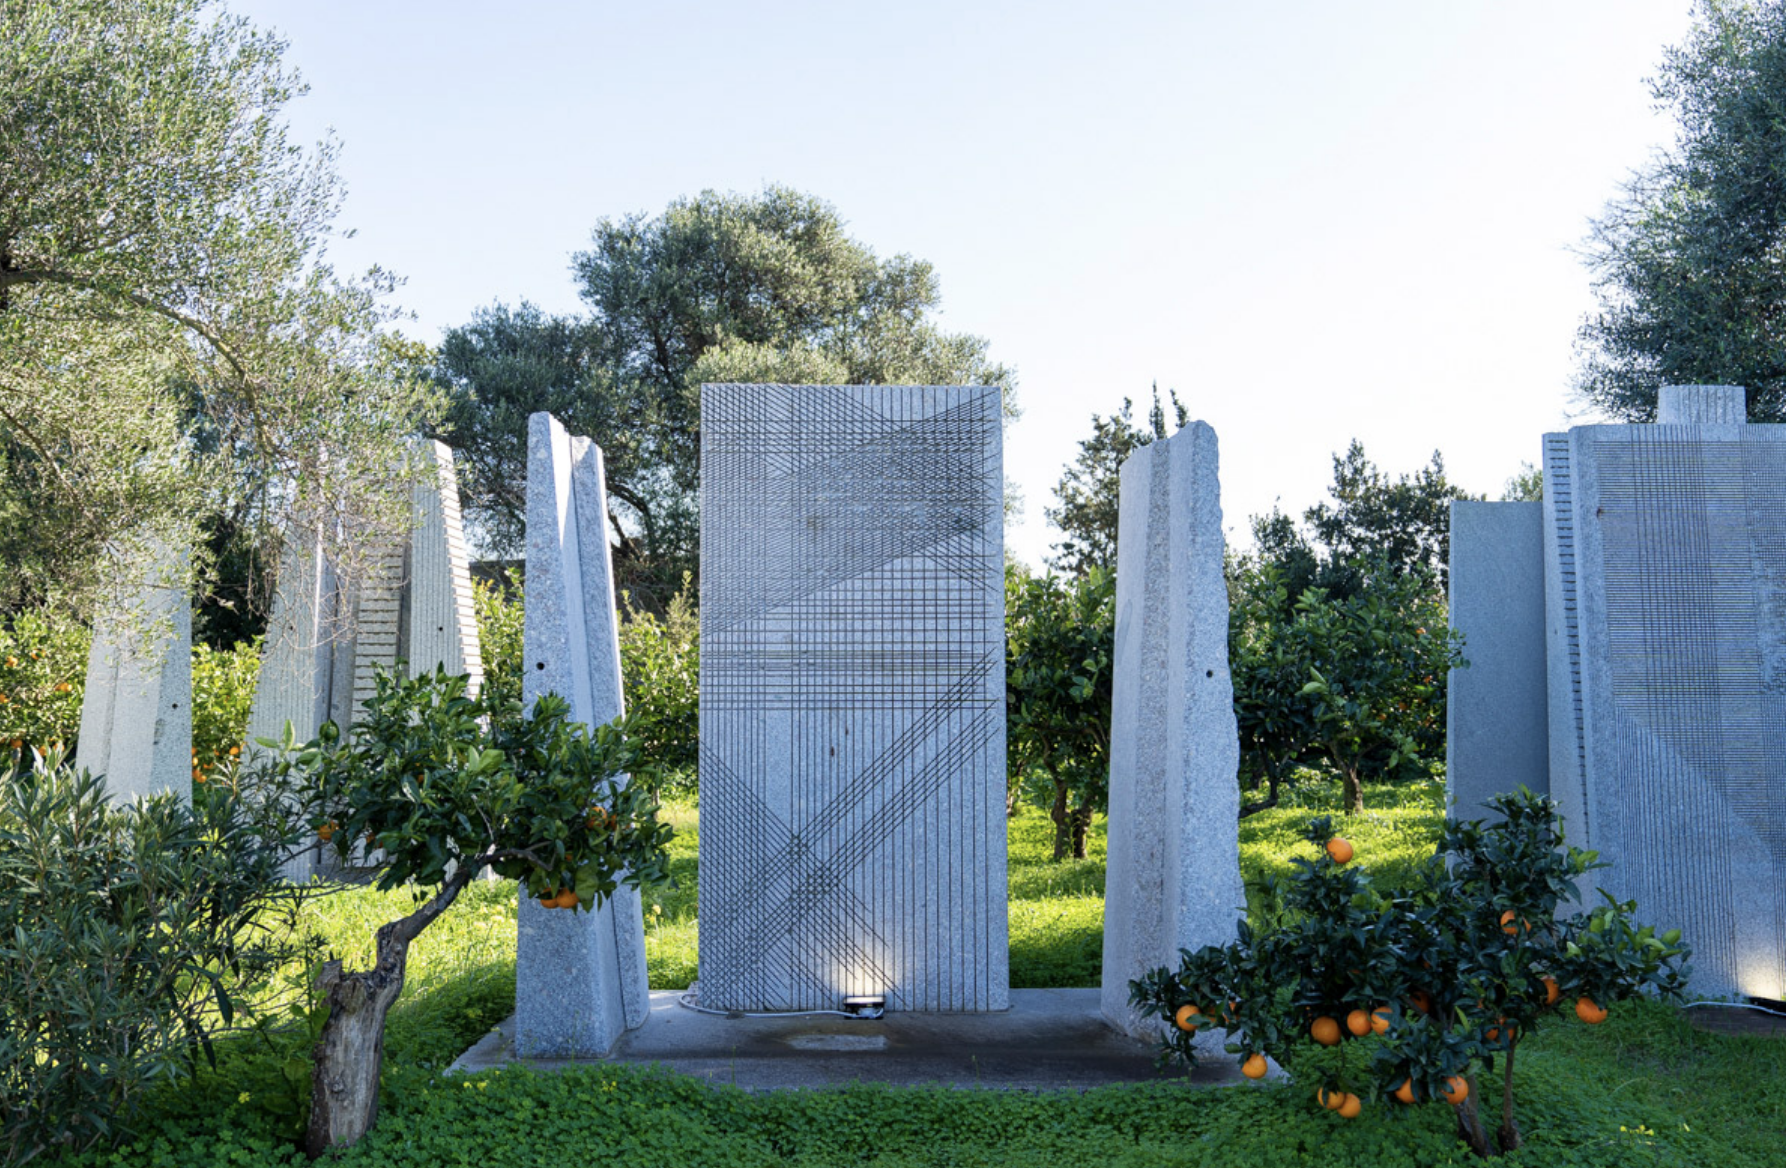 Riapre il Giardino Sonoro a San Sperate - Fondazione Pinuccio Sciola